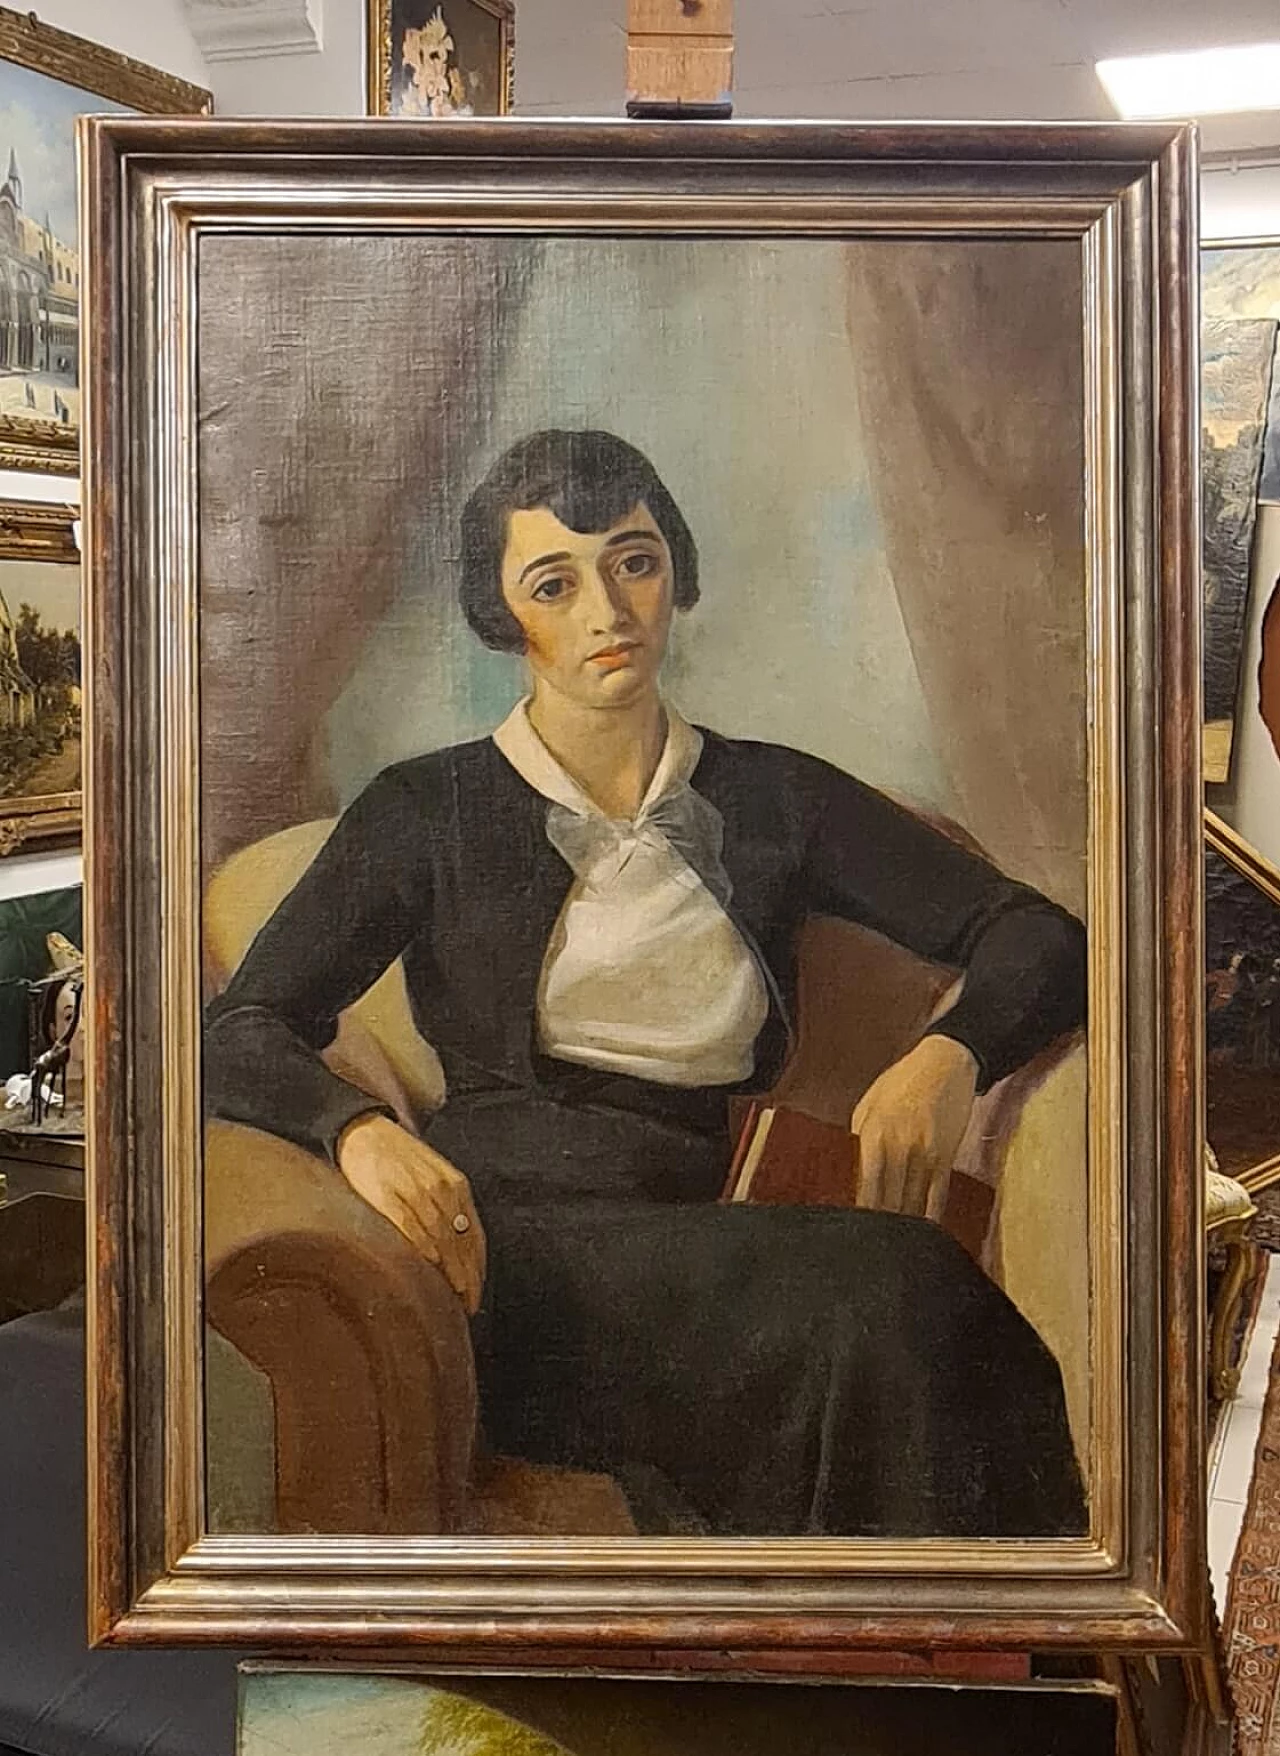 Ritratto di figura femminile seduta con libro, dipinto a olio su tela 2